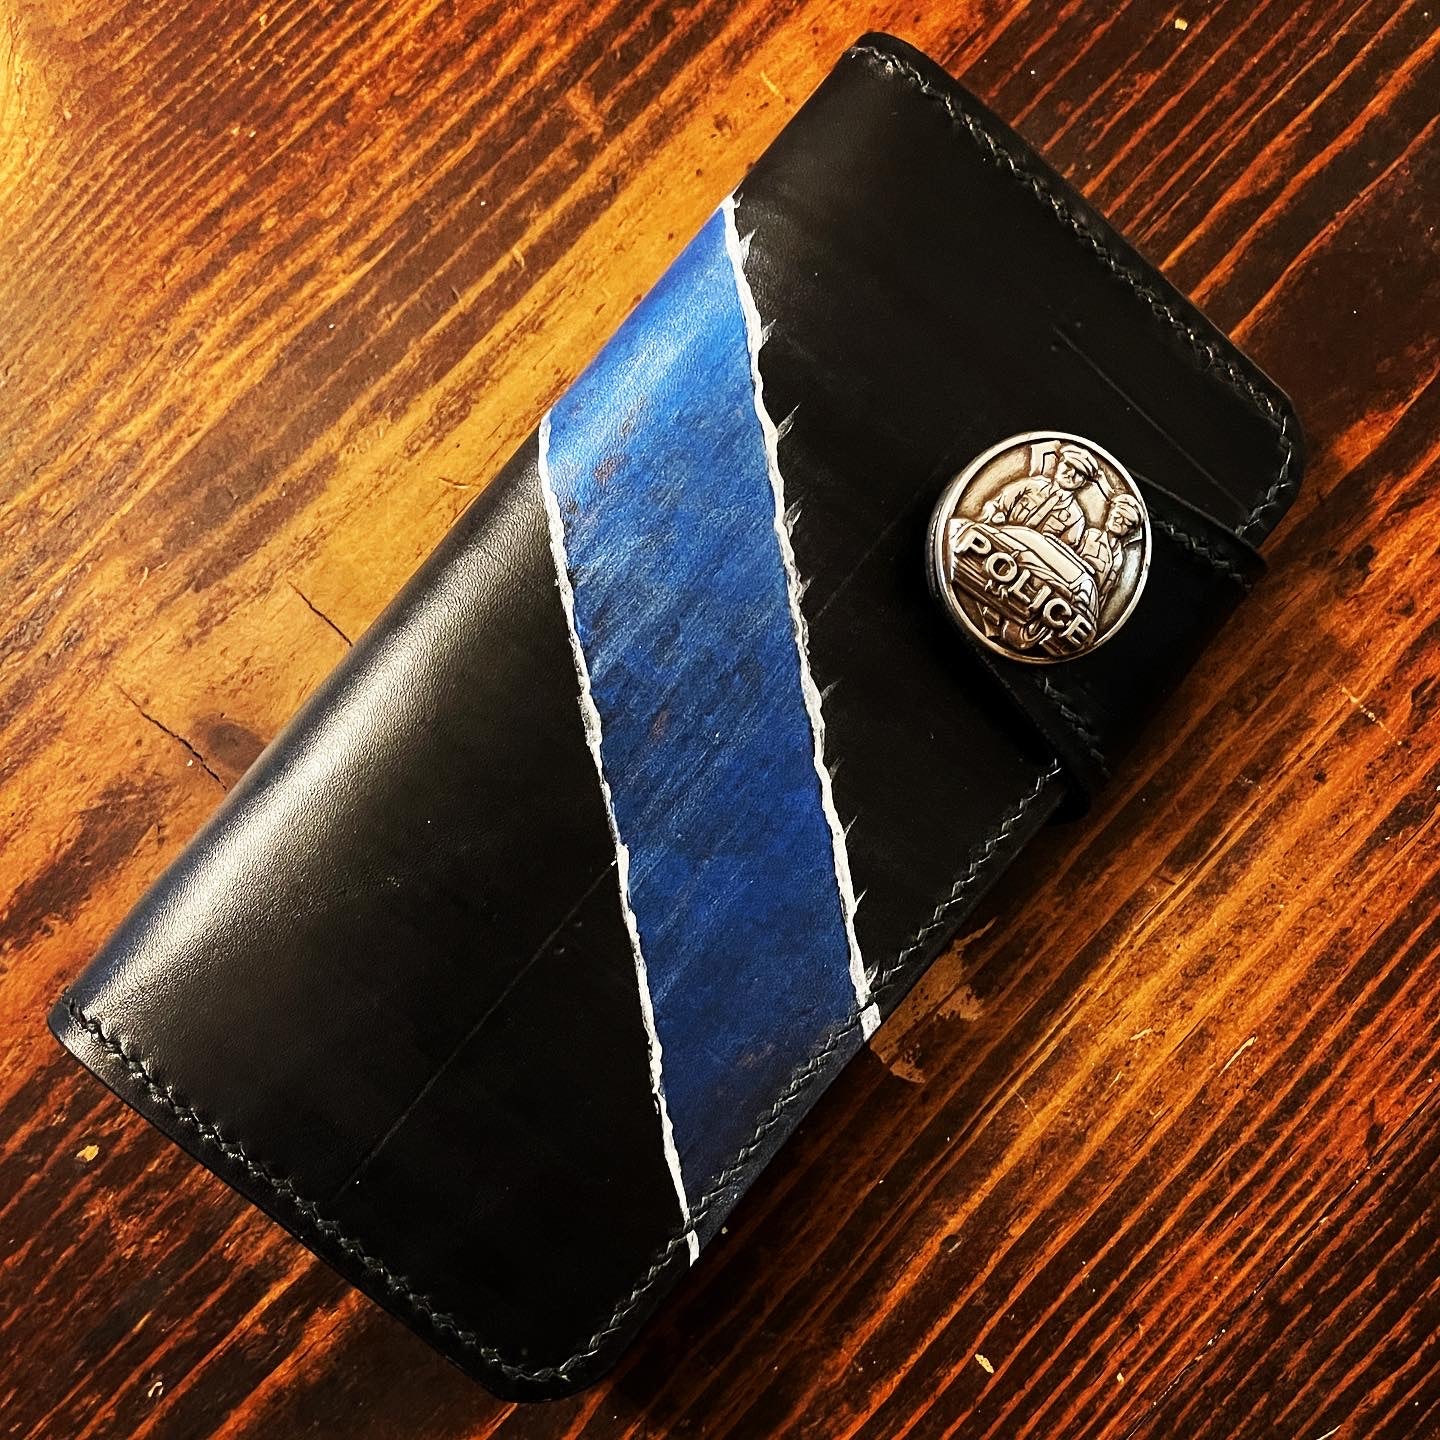 long wallet blue